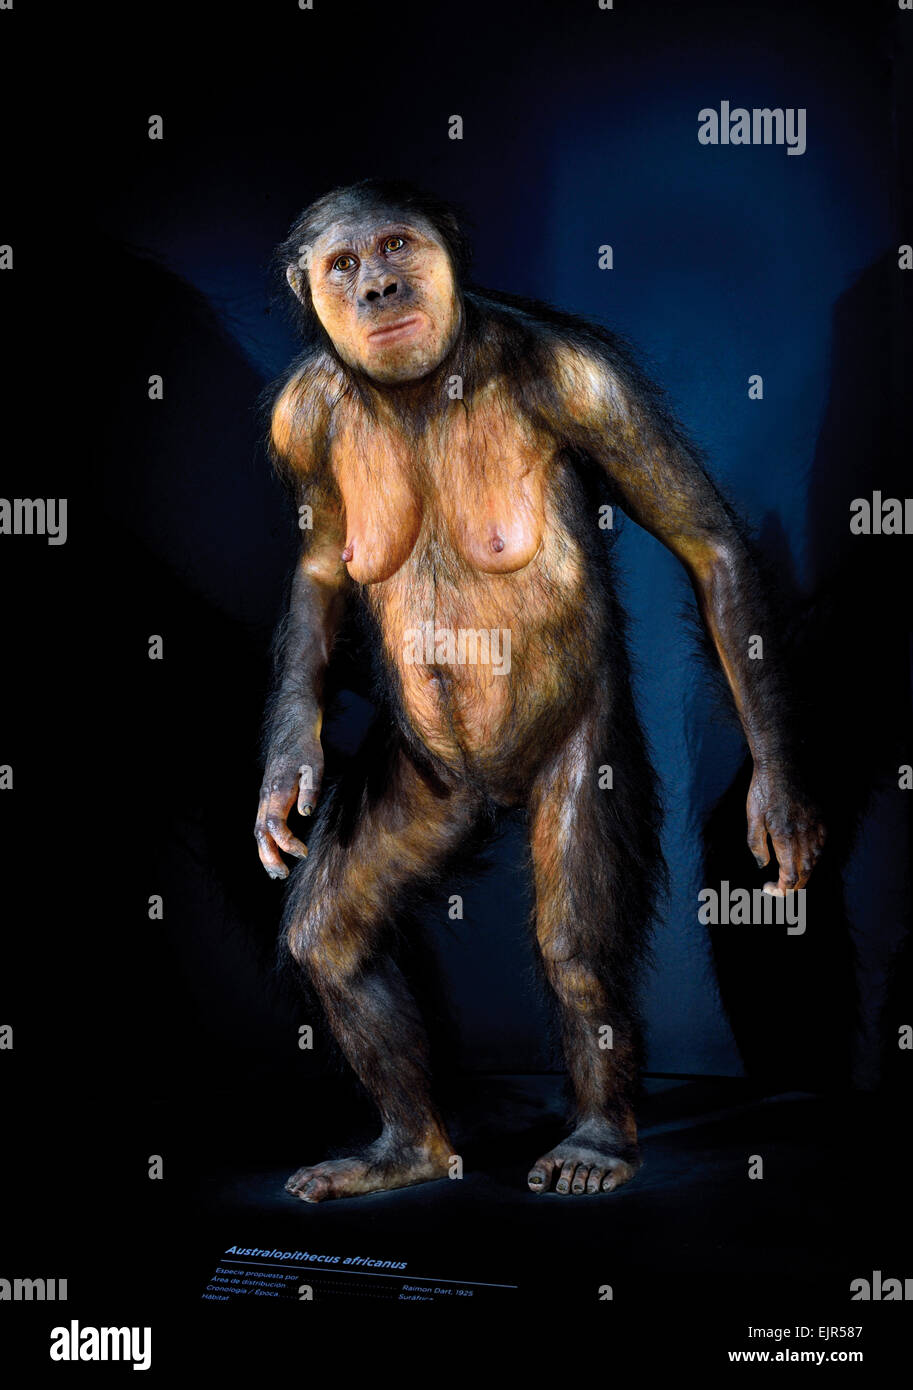 España, Burgos: homínido Australopithecus Africanus en el Museo de la Evolución Humana en Burgos Foto de stock